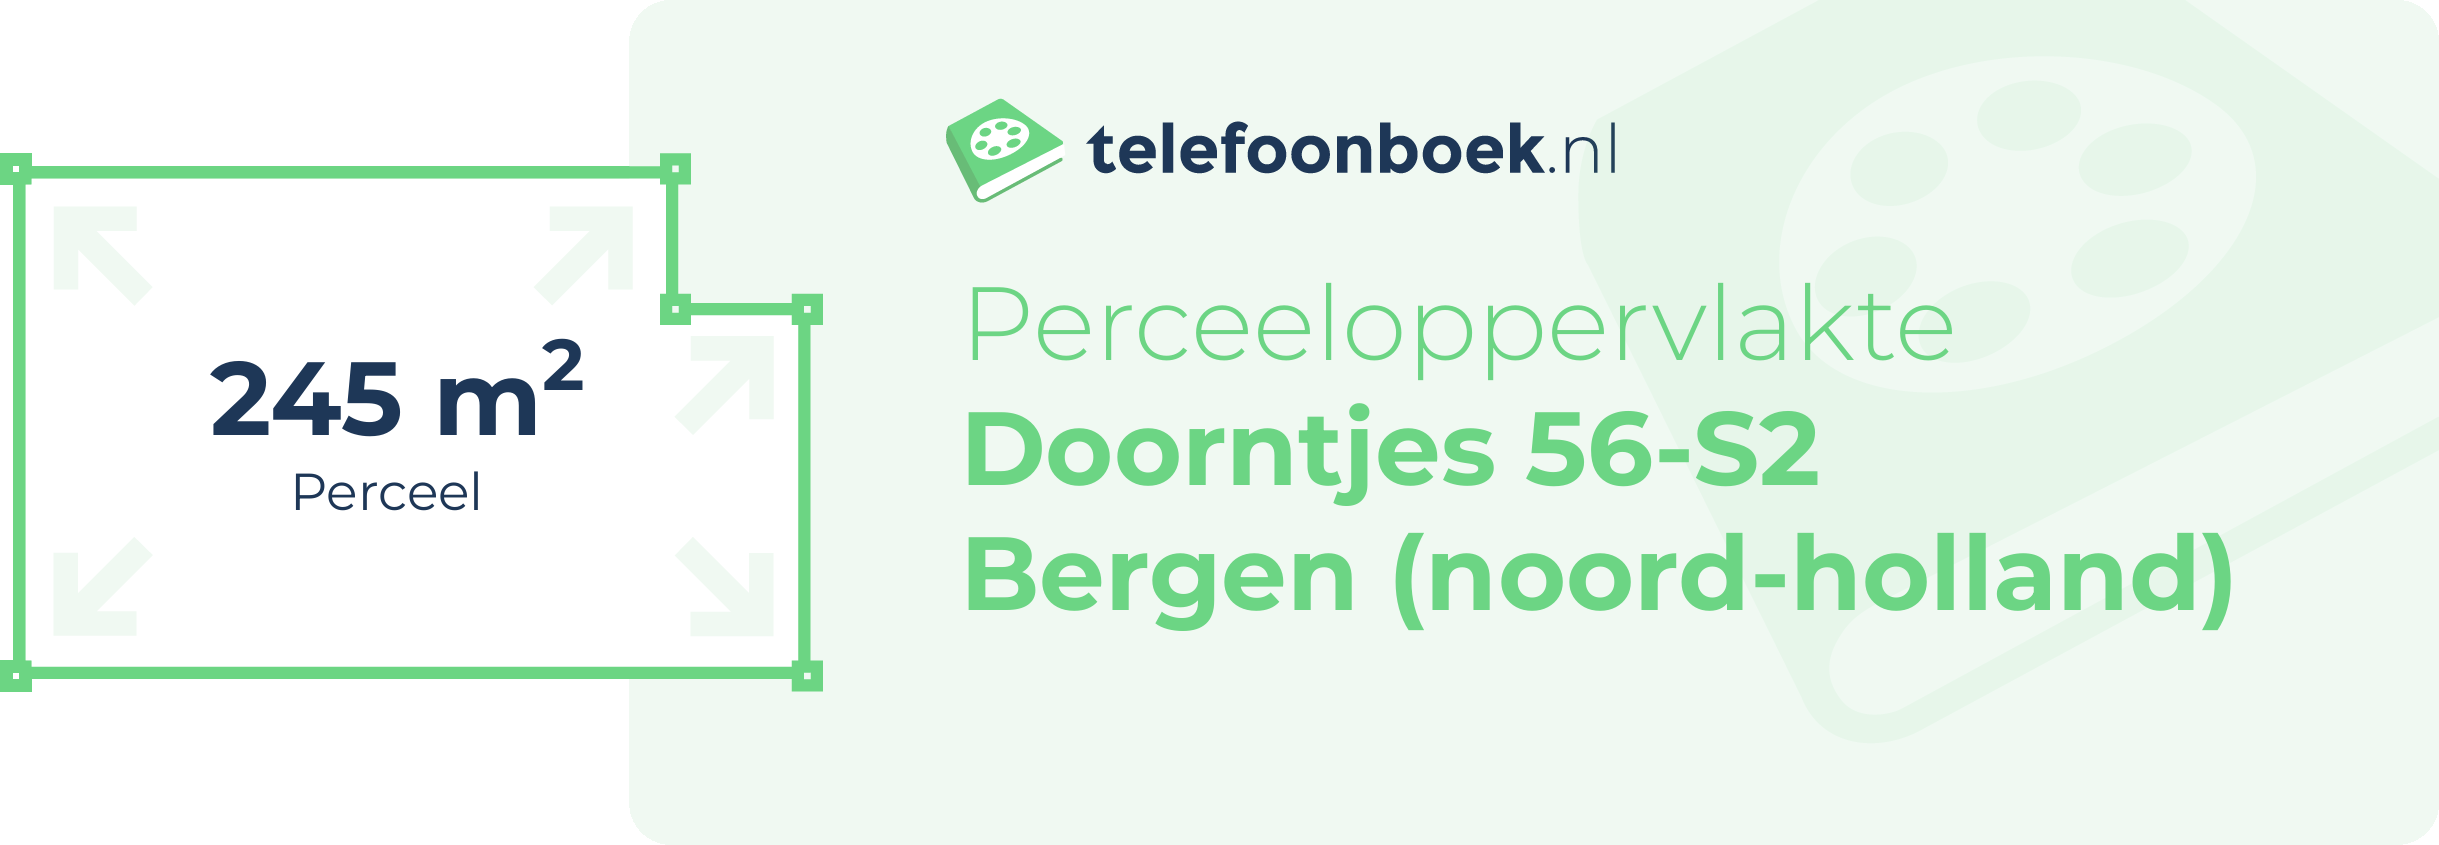 Perceeloppervlakte Doorntjes 56-S2 Bergen (Noord-Holland)